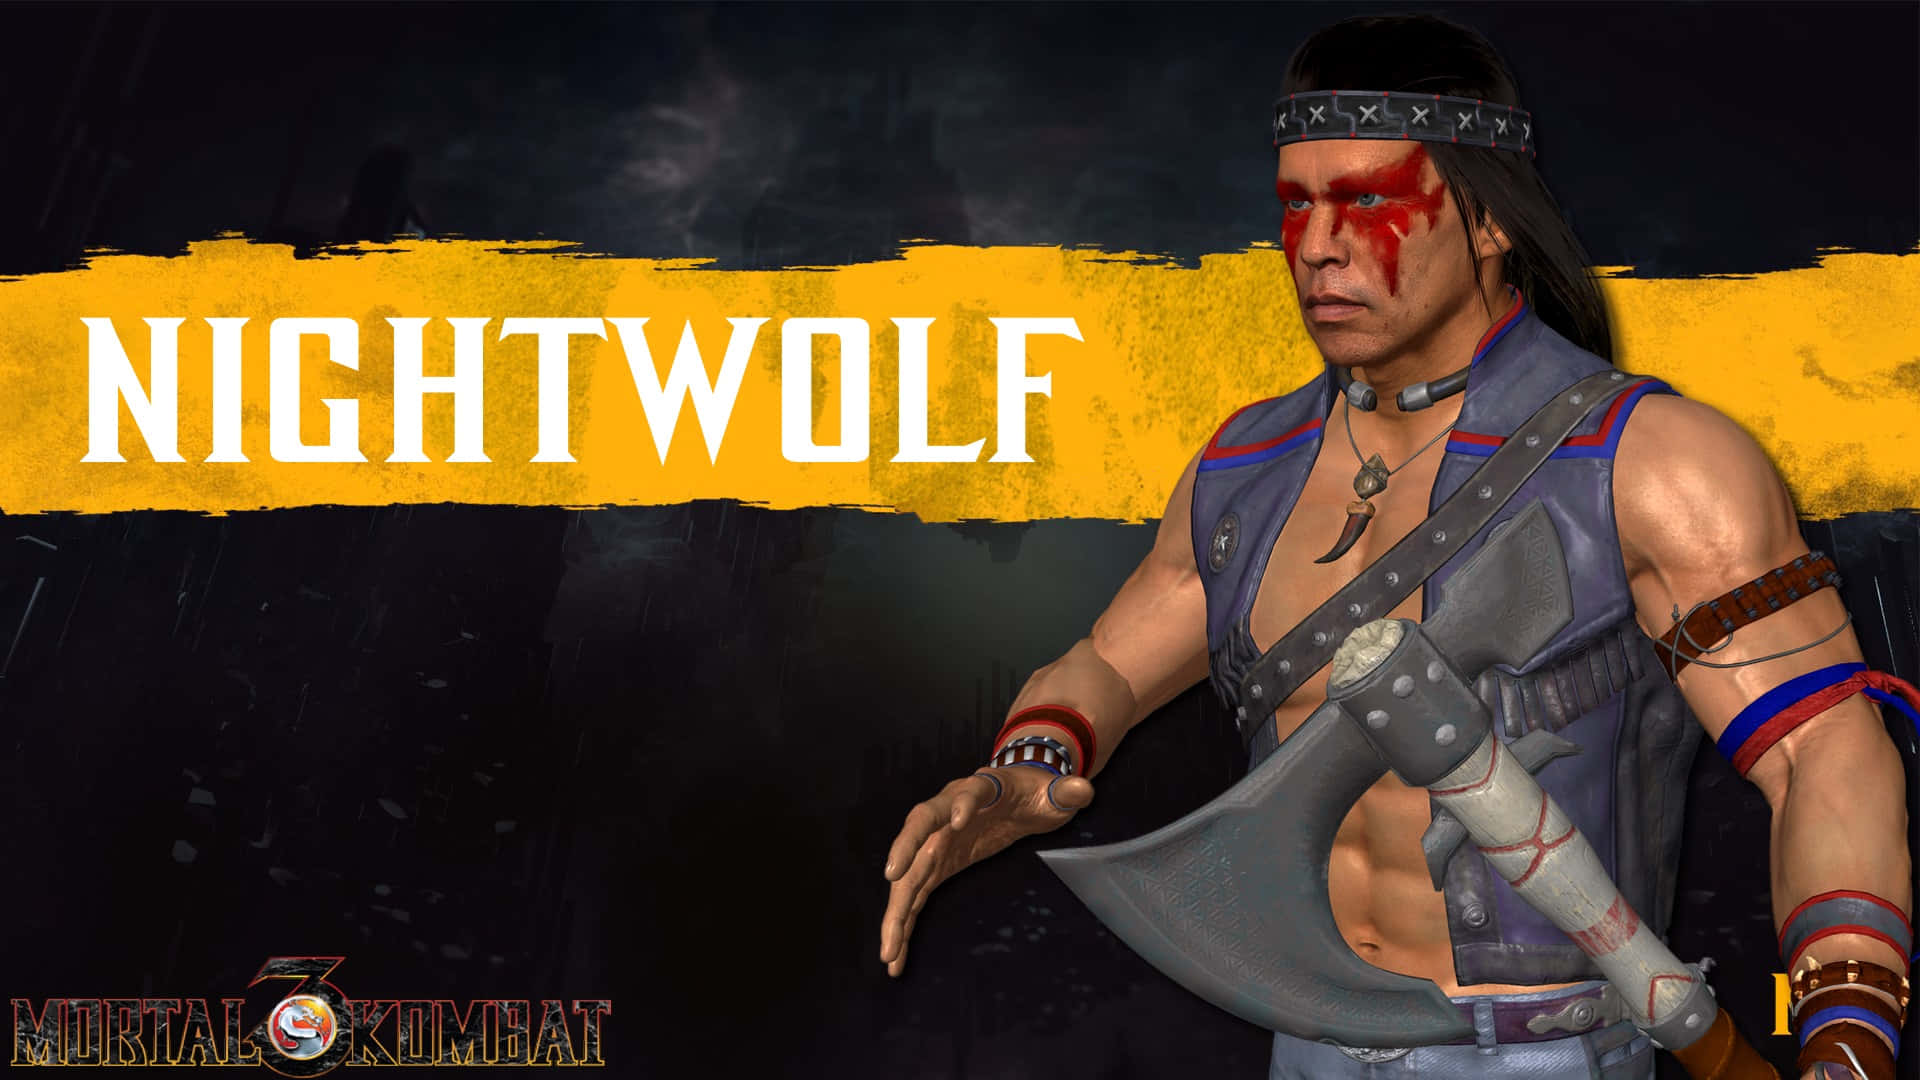 Mortal Kombat Nightwolf in Battle Stance Wallpaper